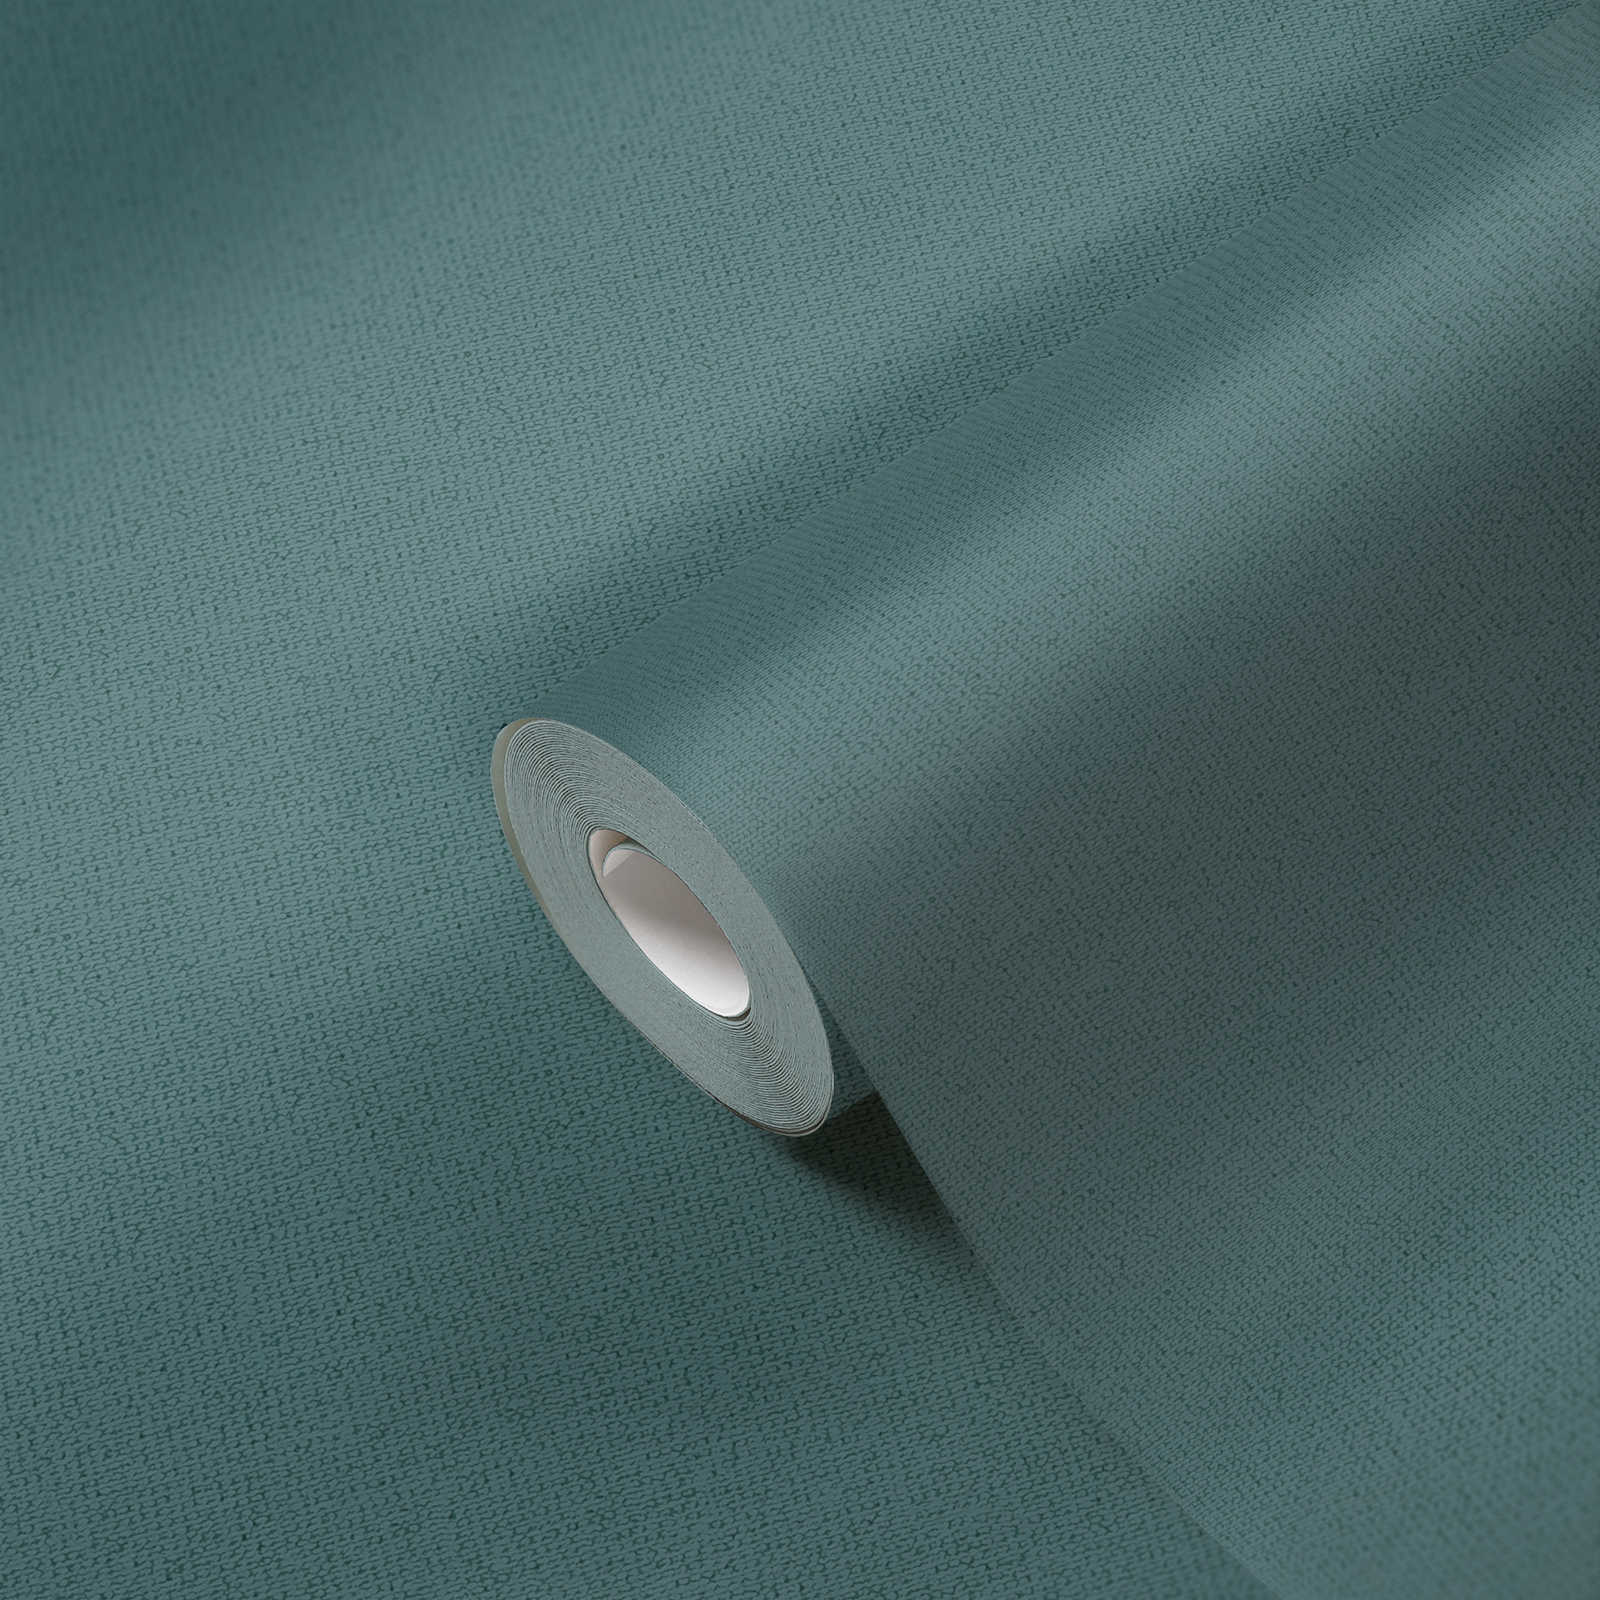             Onderlaag behang in Scandinavische stijl in gevlekt & mat - blauw, petrol
        